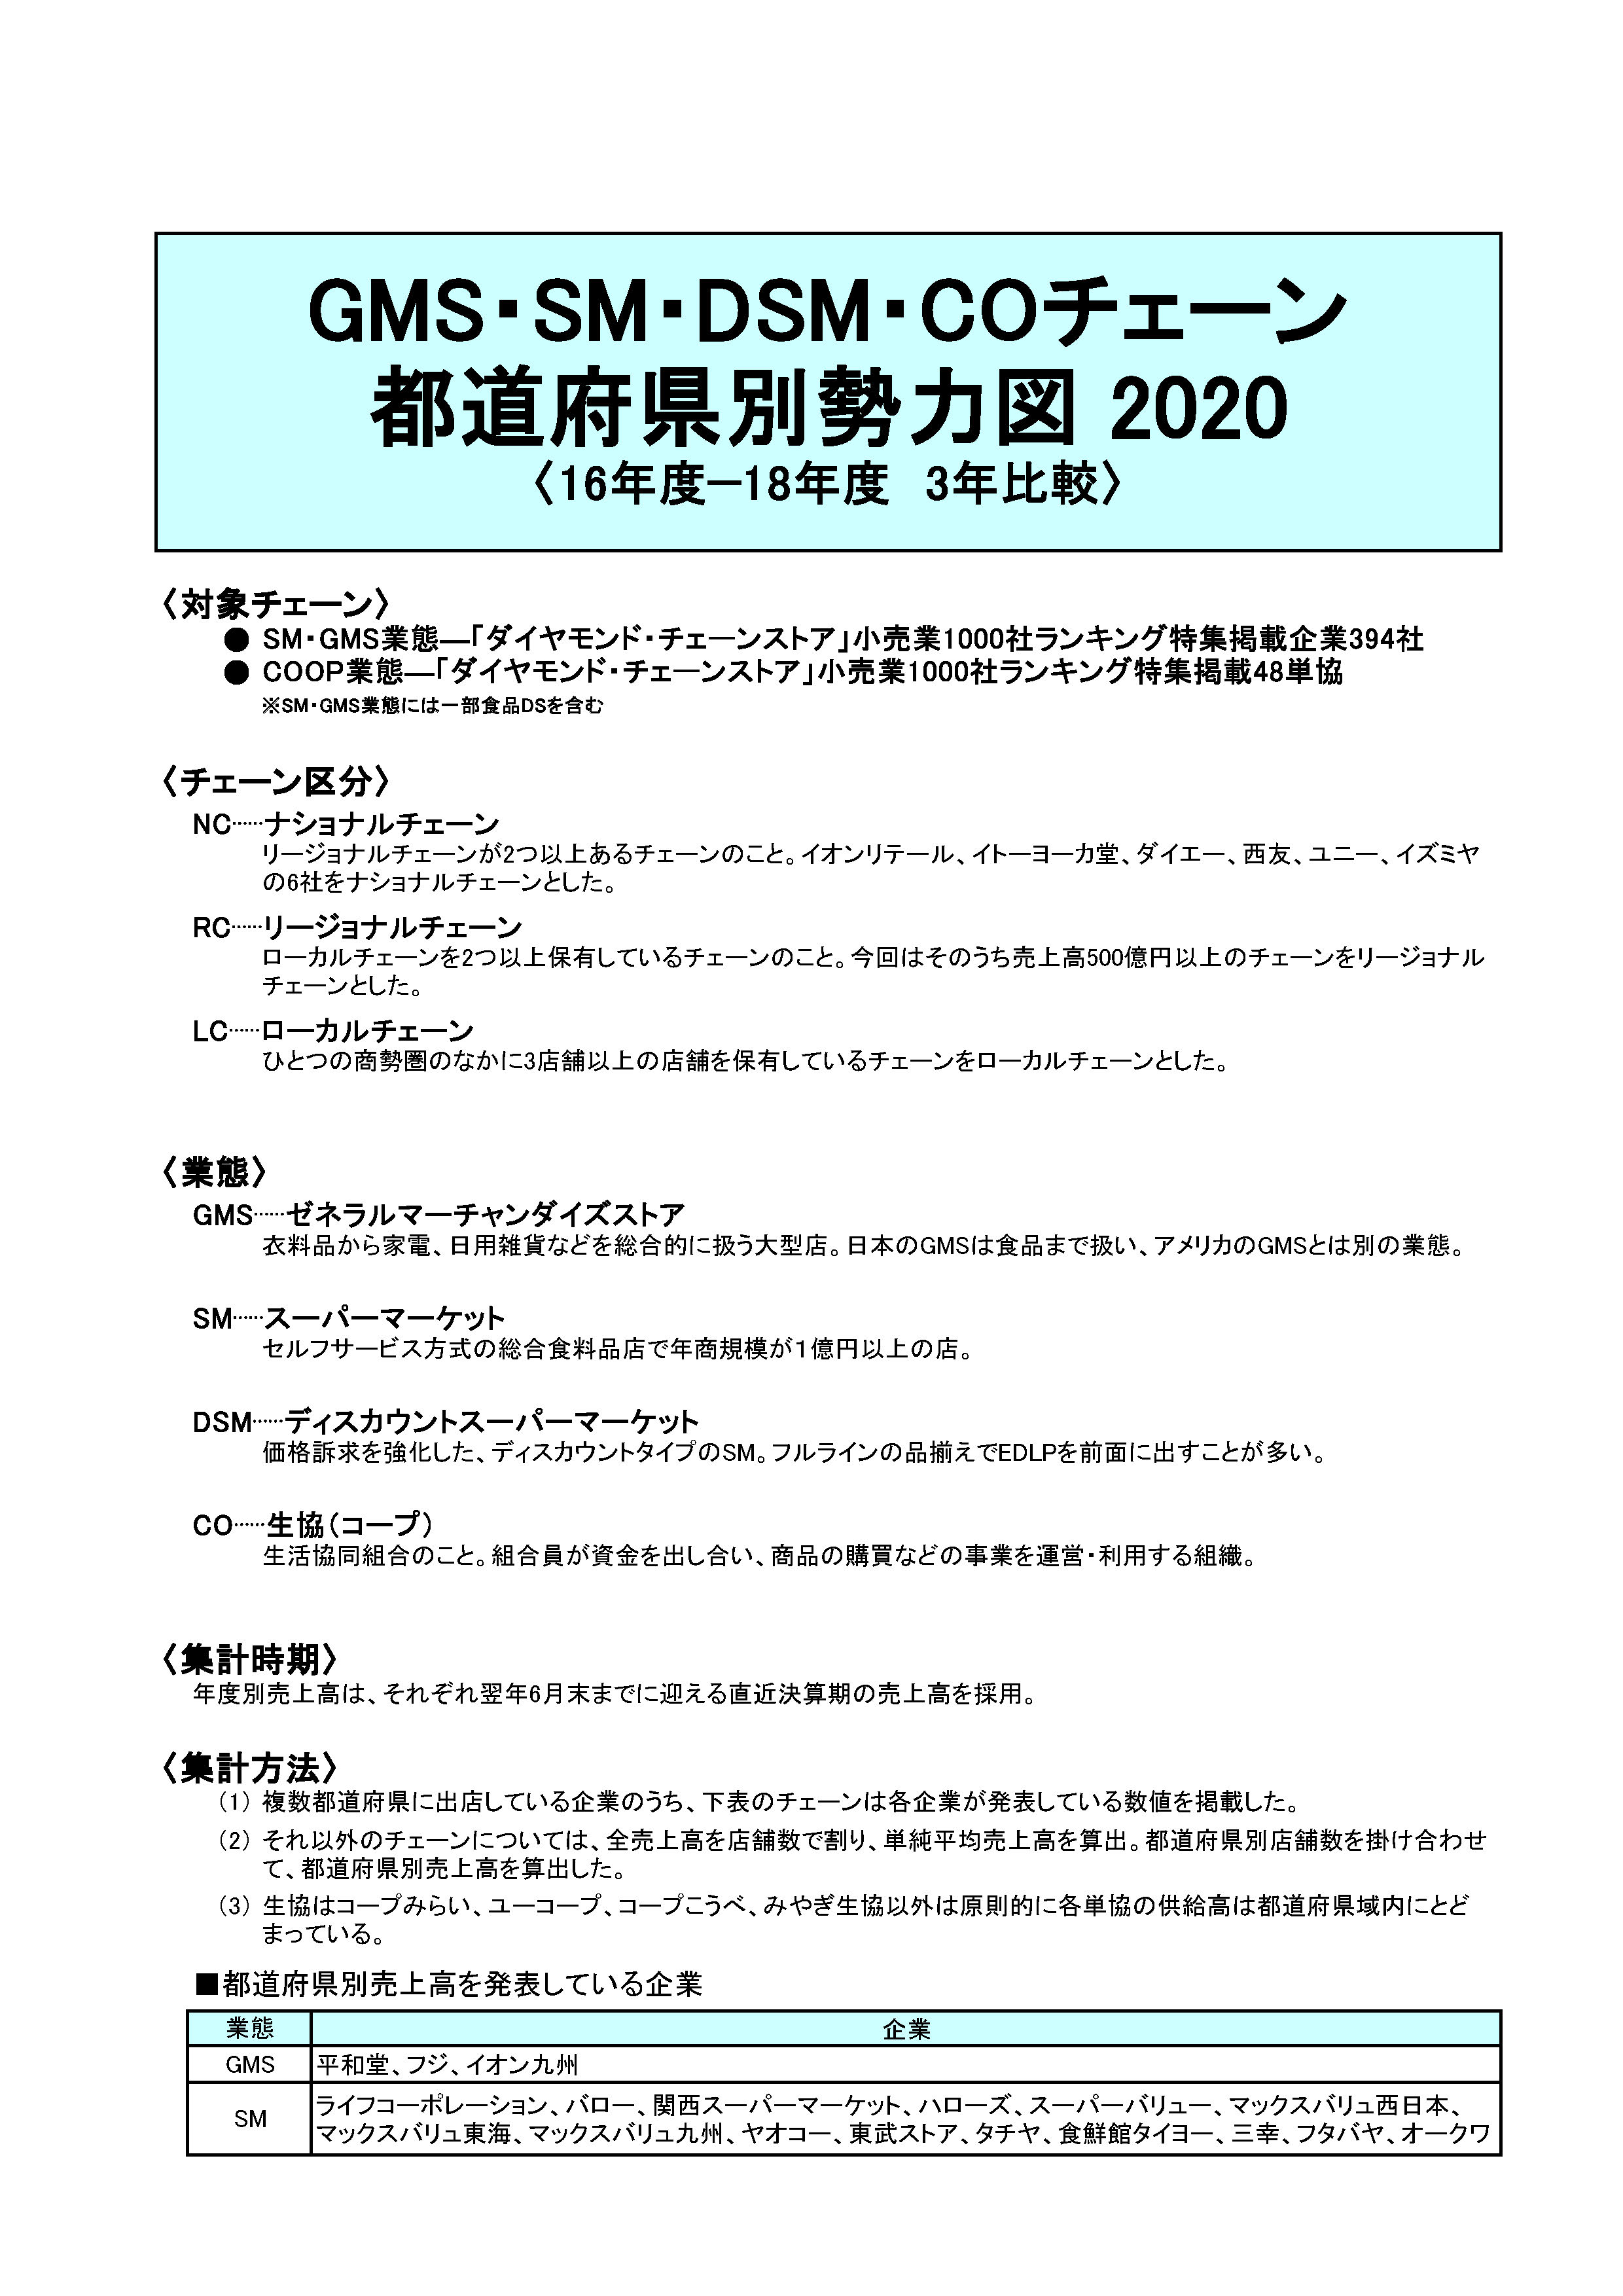 SM・GMSチェーン都道府県別勢力図 2020【Excel形式】